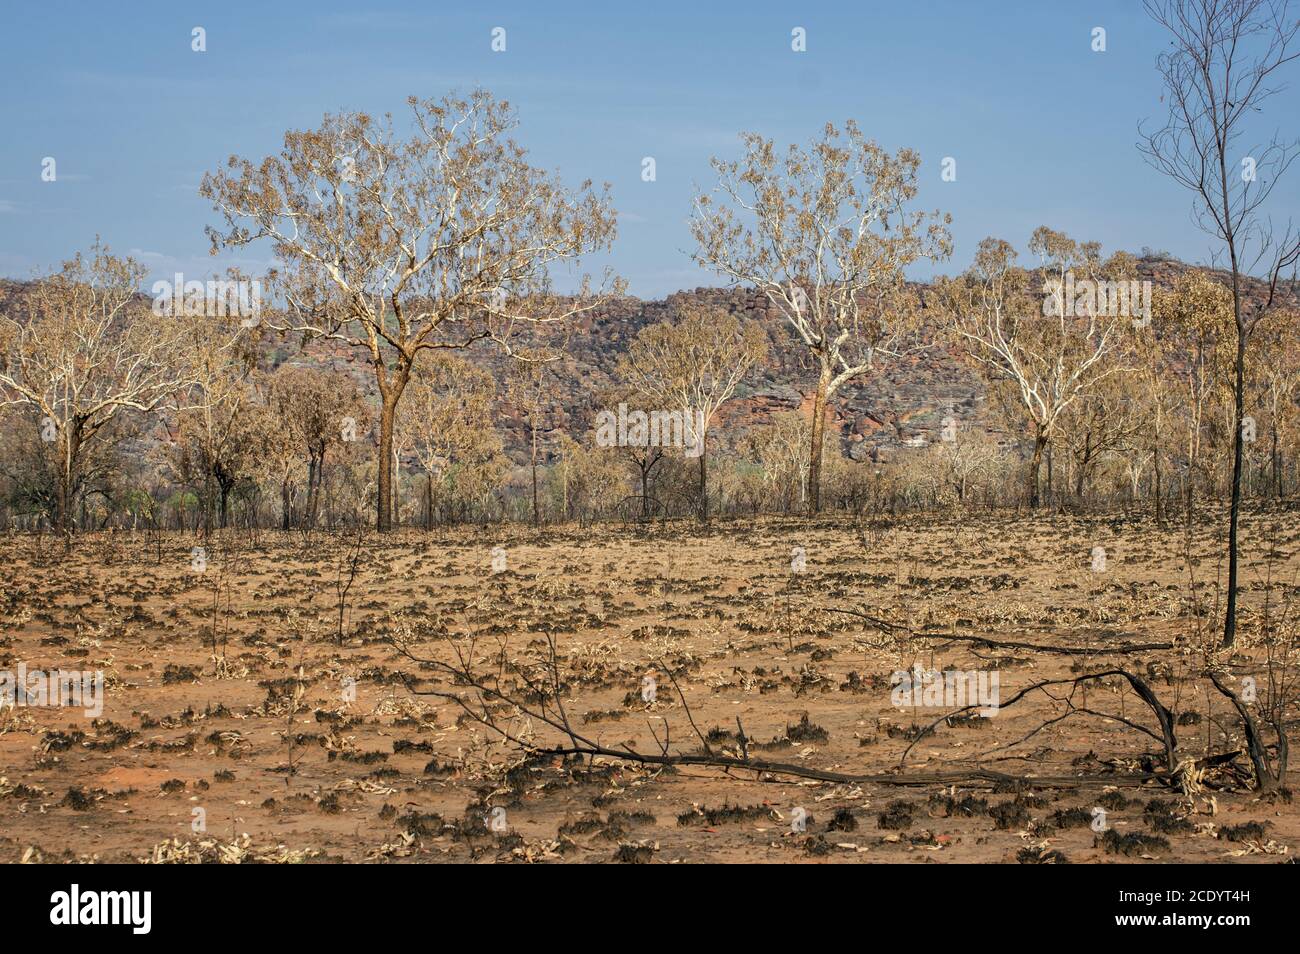 Savane après Bushfire à l'Outback – Australie occidentale Banque D'Images